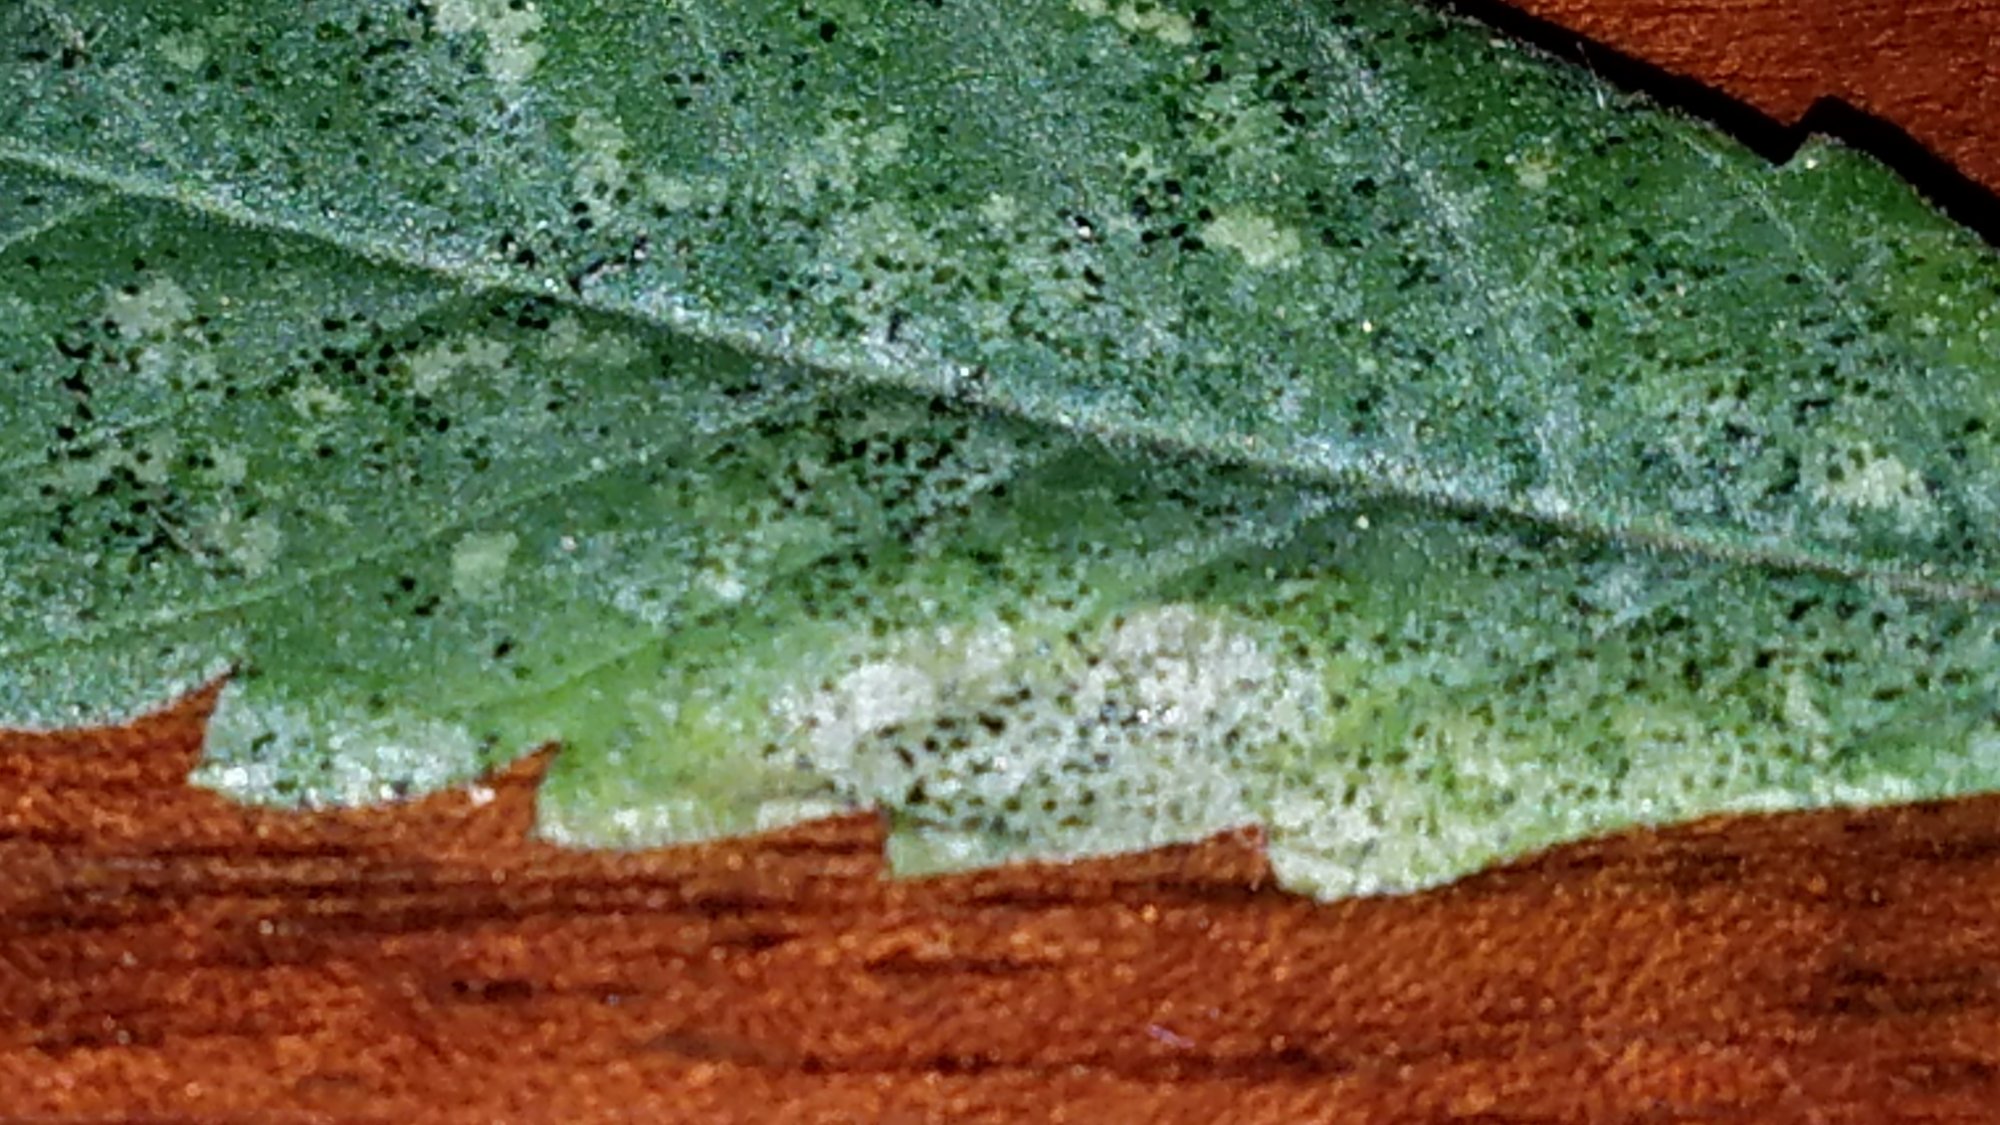 Tiny black spots on fan leaf